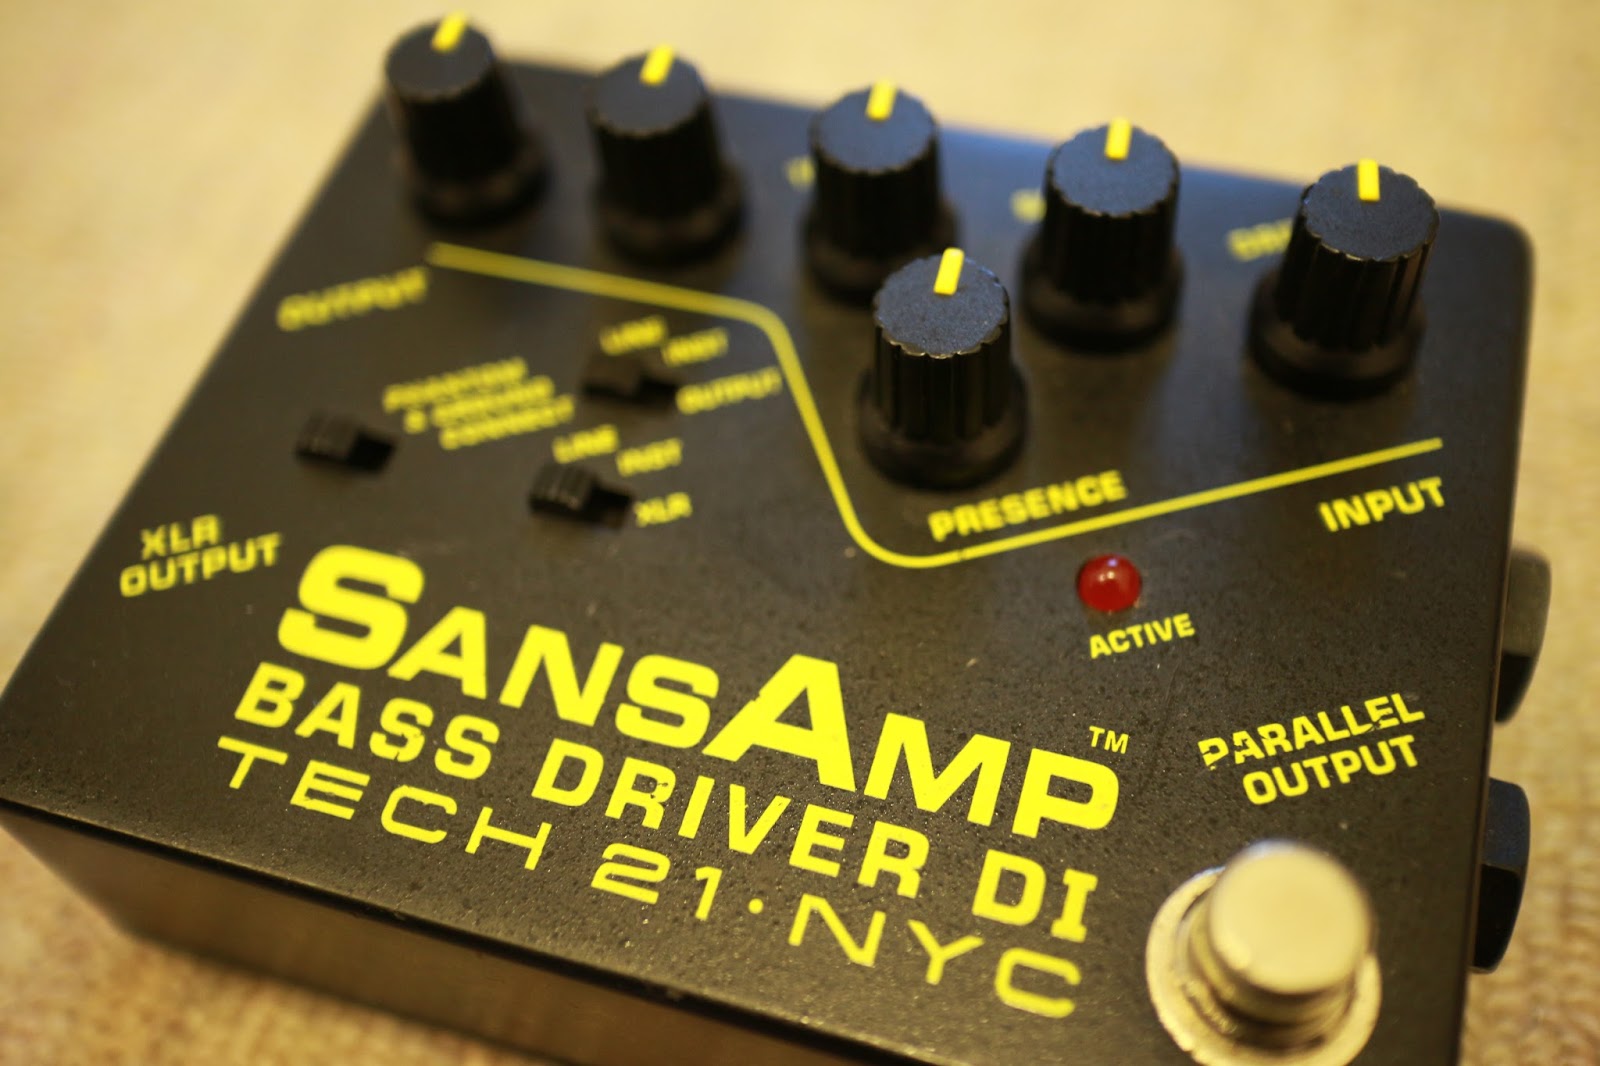 ベースについて考える: TECH21 サンズアンプ SansAmp BASS DRIVER DI レビューと使い方&試奏音源